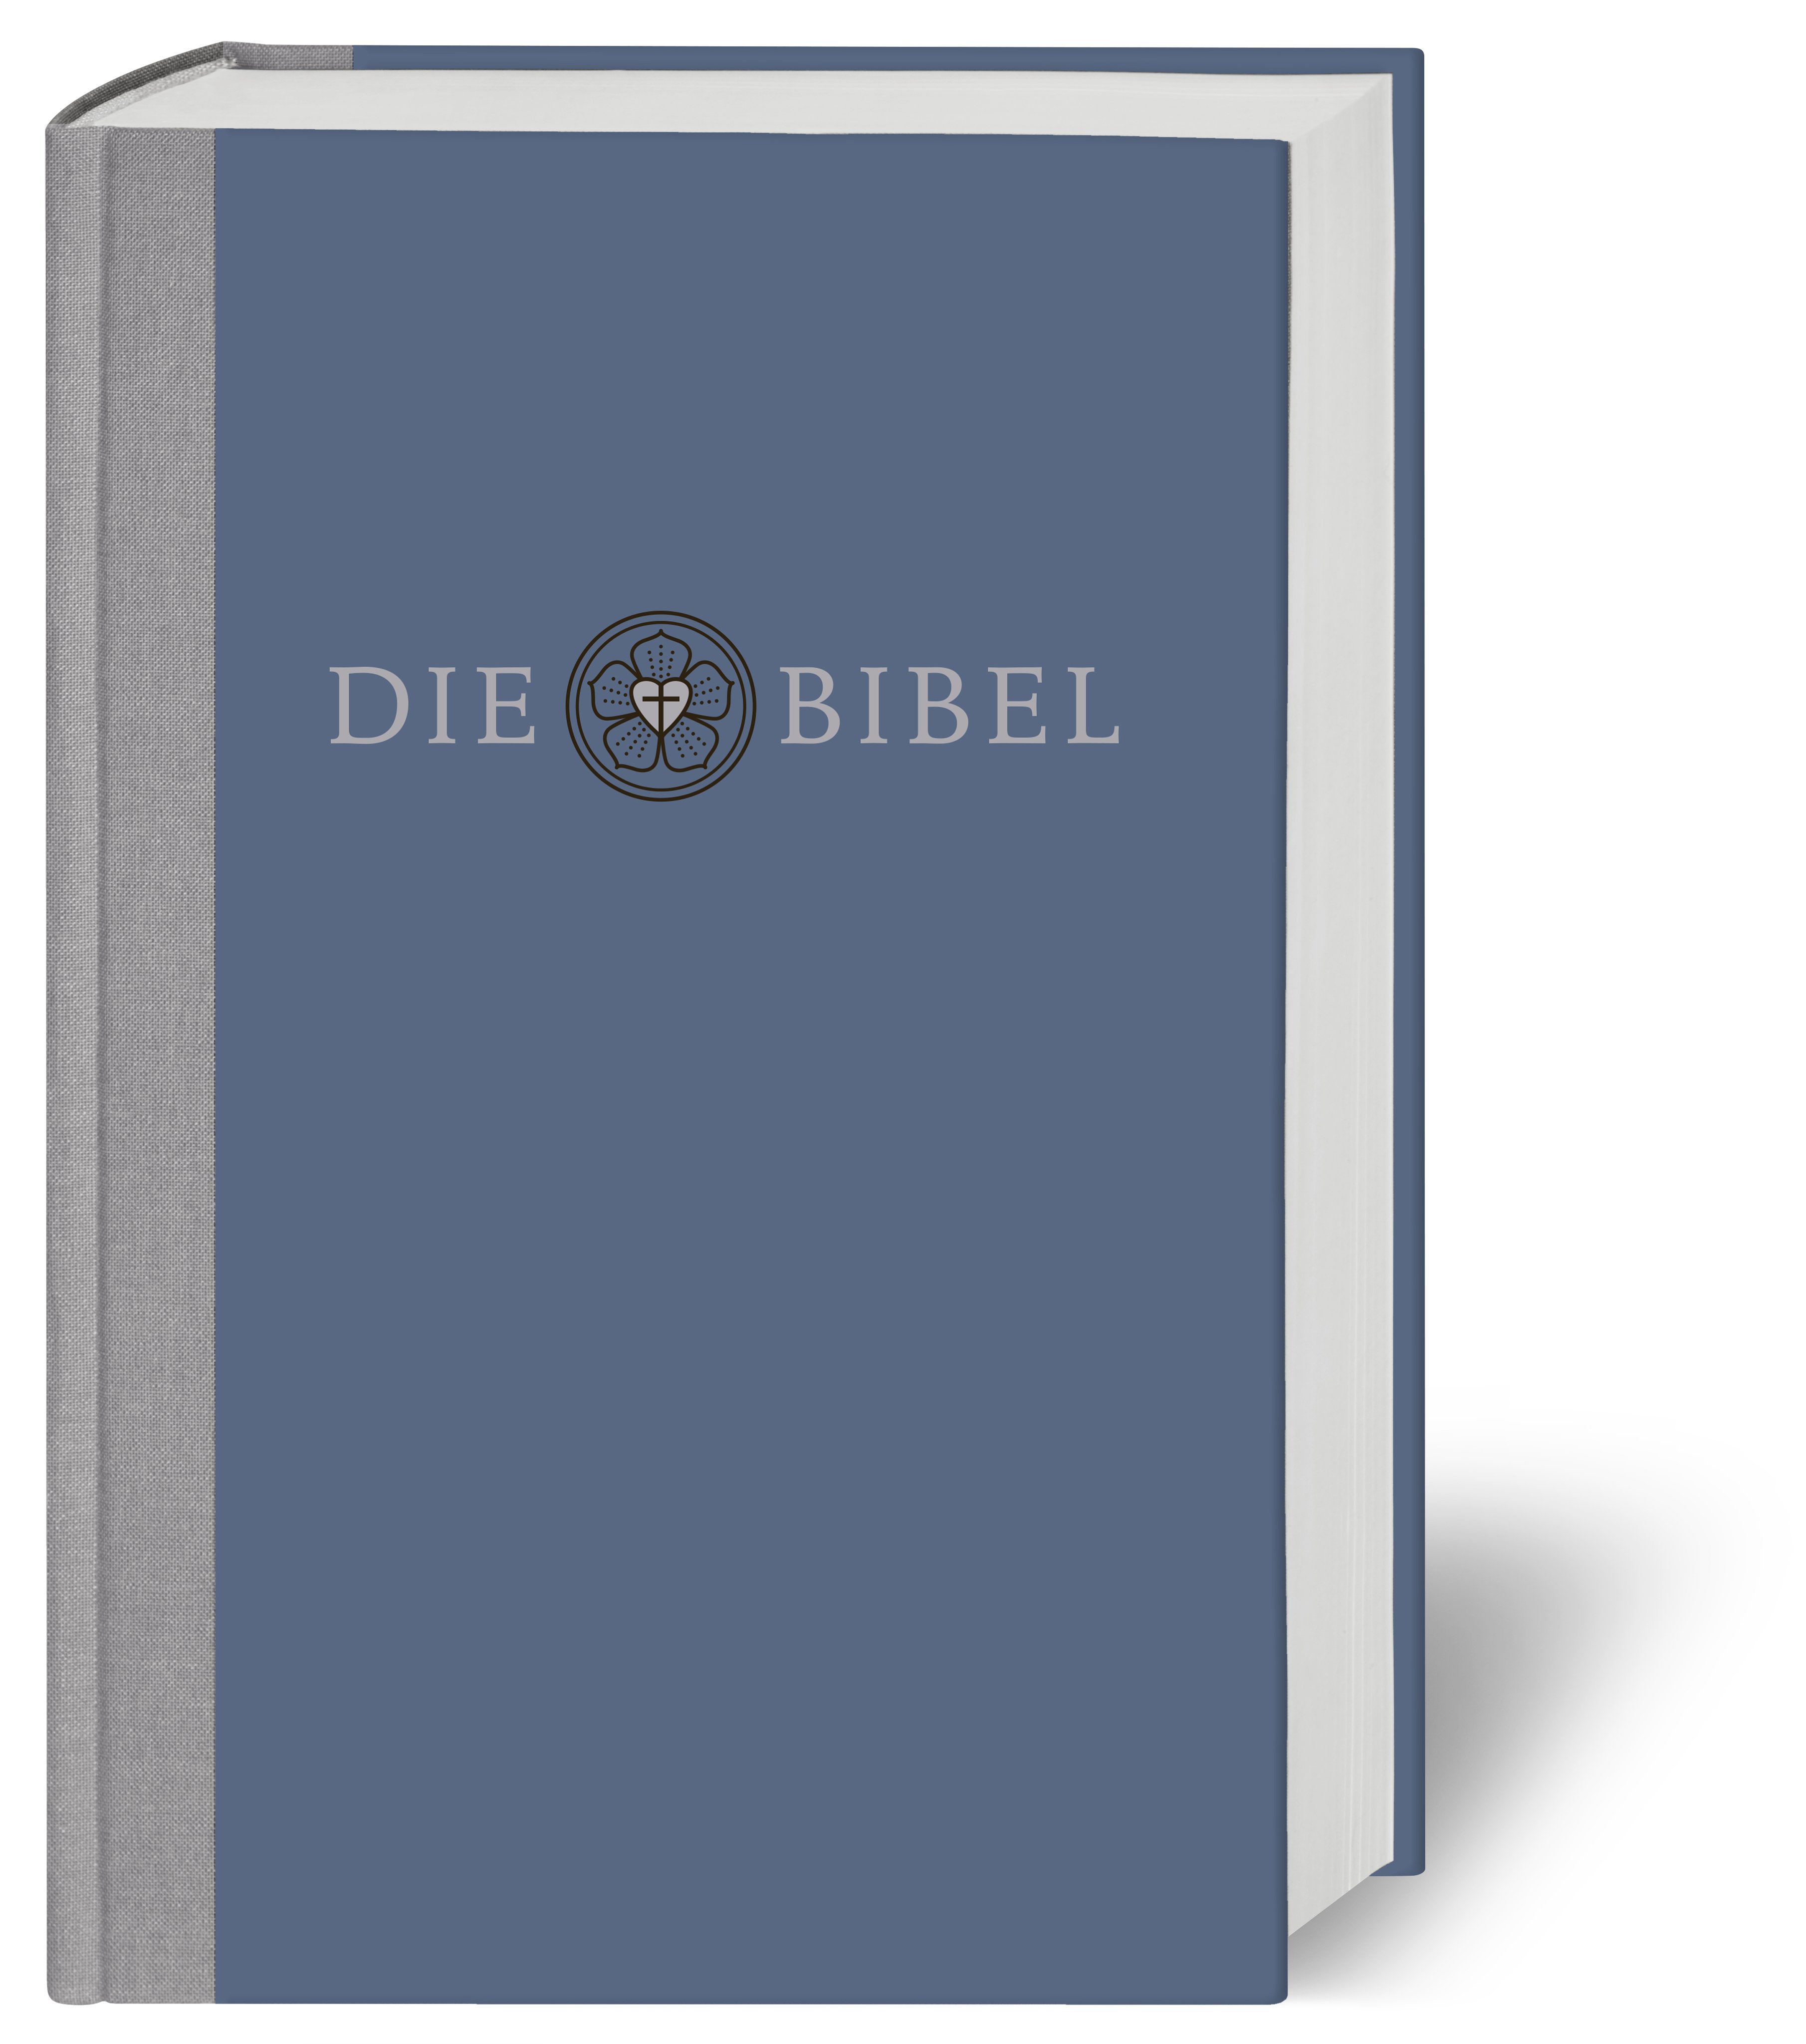 Lutherbibel revidiert - Die Prachtbibel mit Bildern von Lucas Cranach - Cover